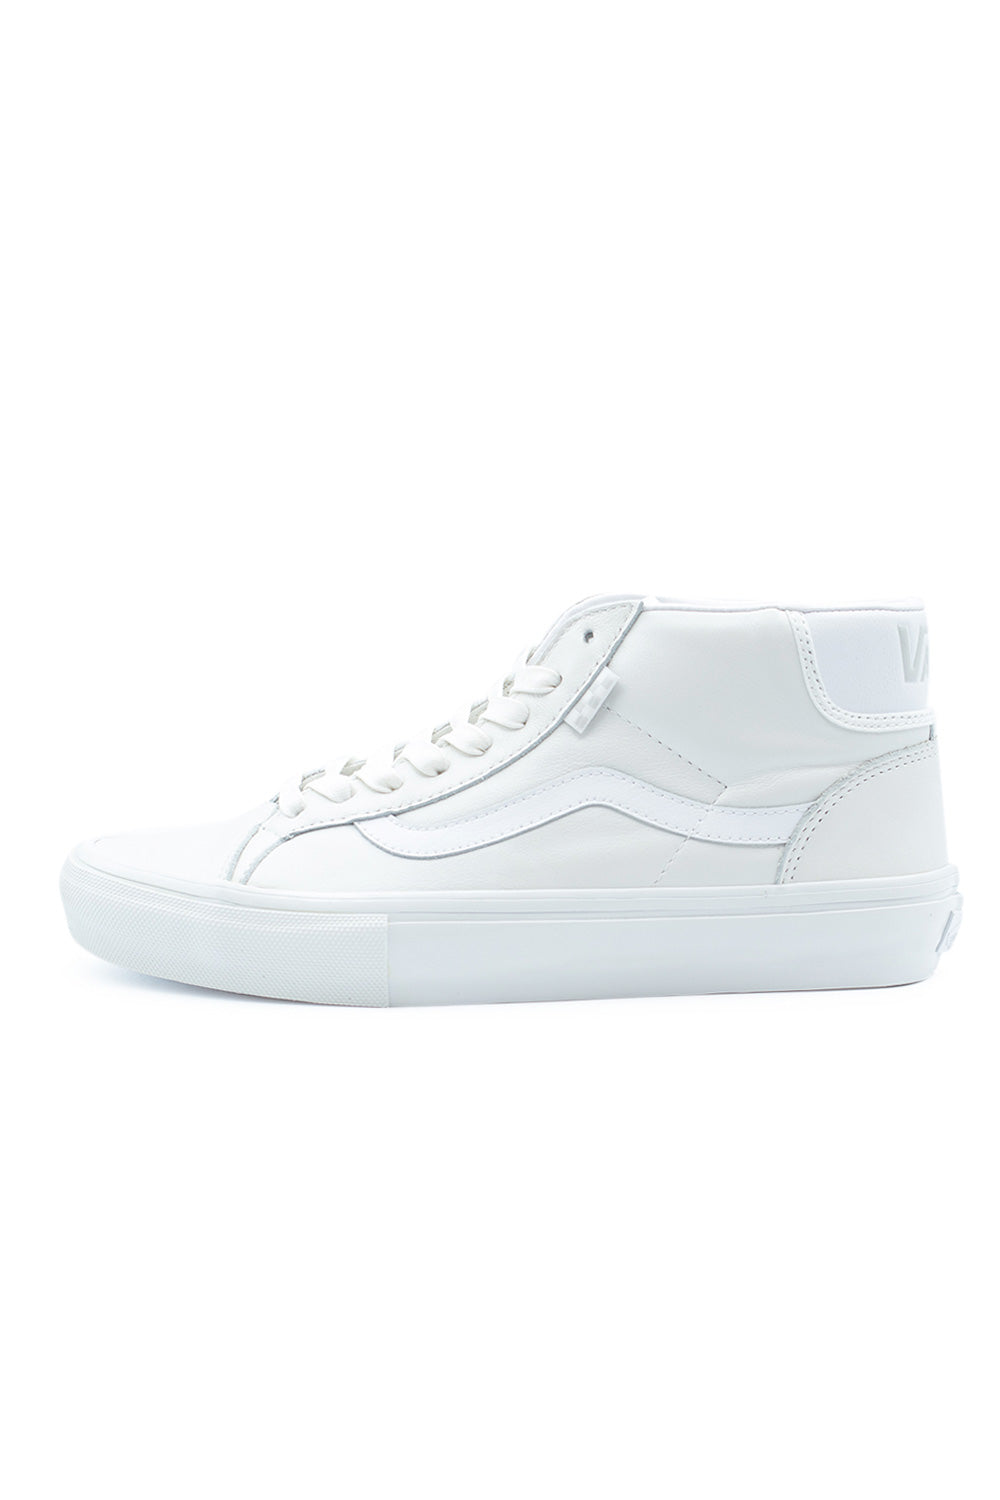 Vans Mid Skool (Skate) Shoe Pearl Leather White - BONKERS